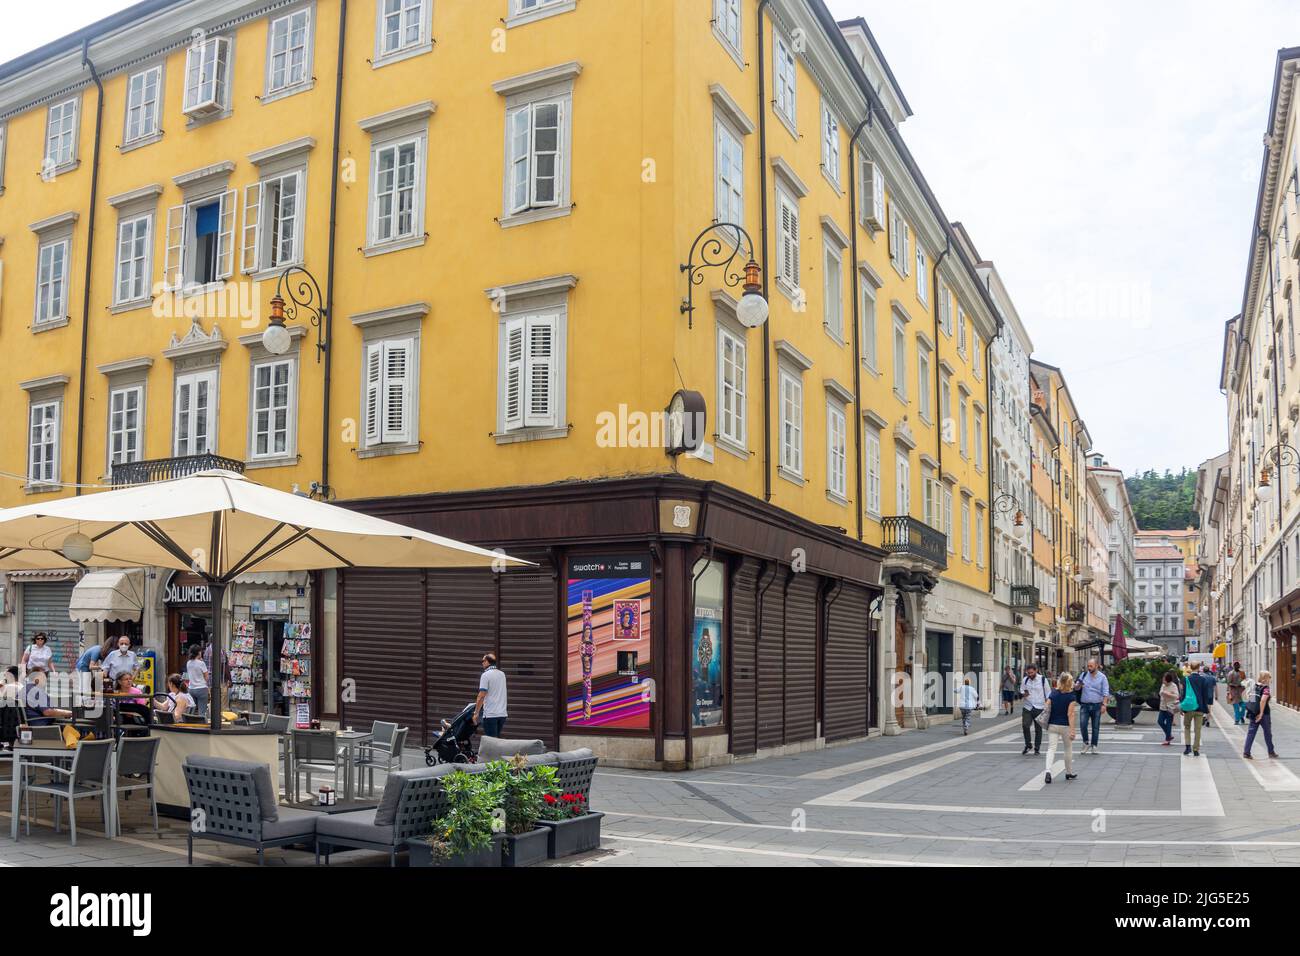 Pedestrianised Via San Lazzaro (shopping street), Trieste, Friuli Venezia Giulia Region, Italy Stock Photo